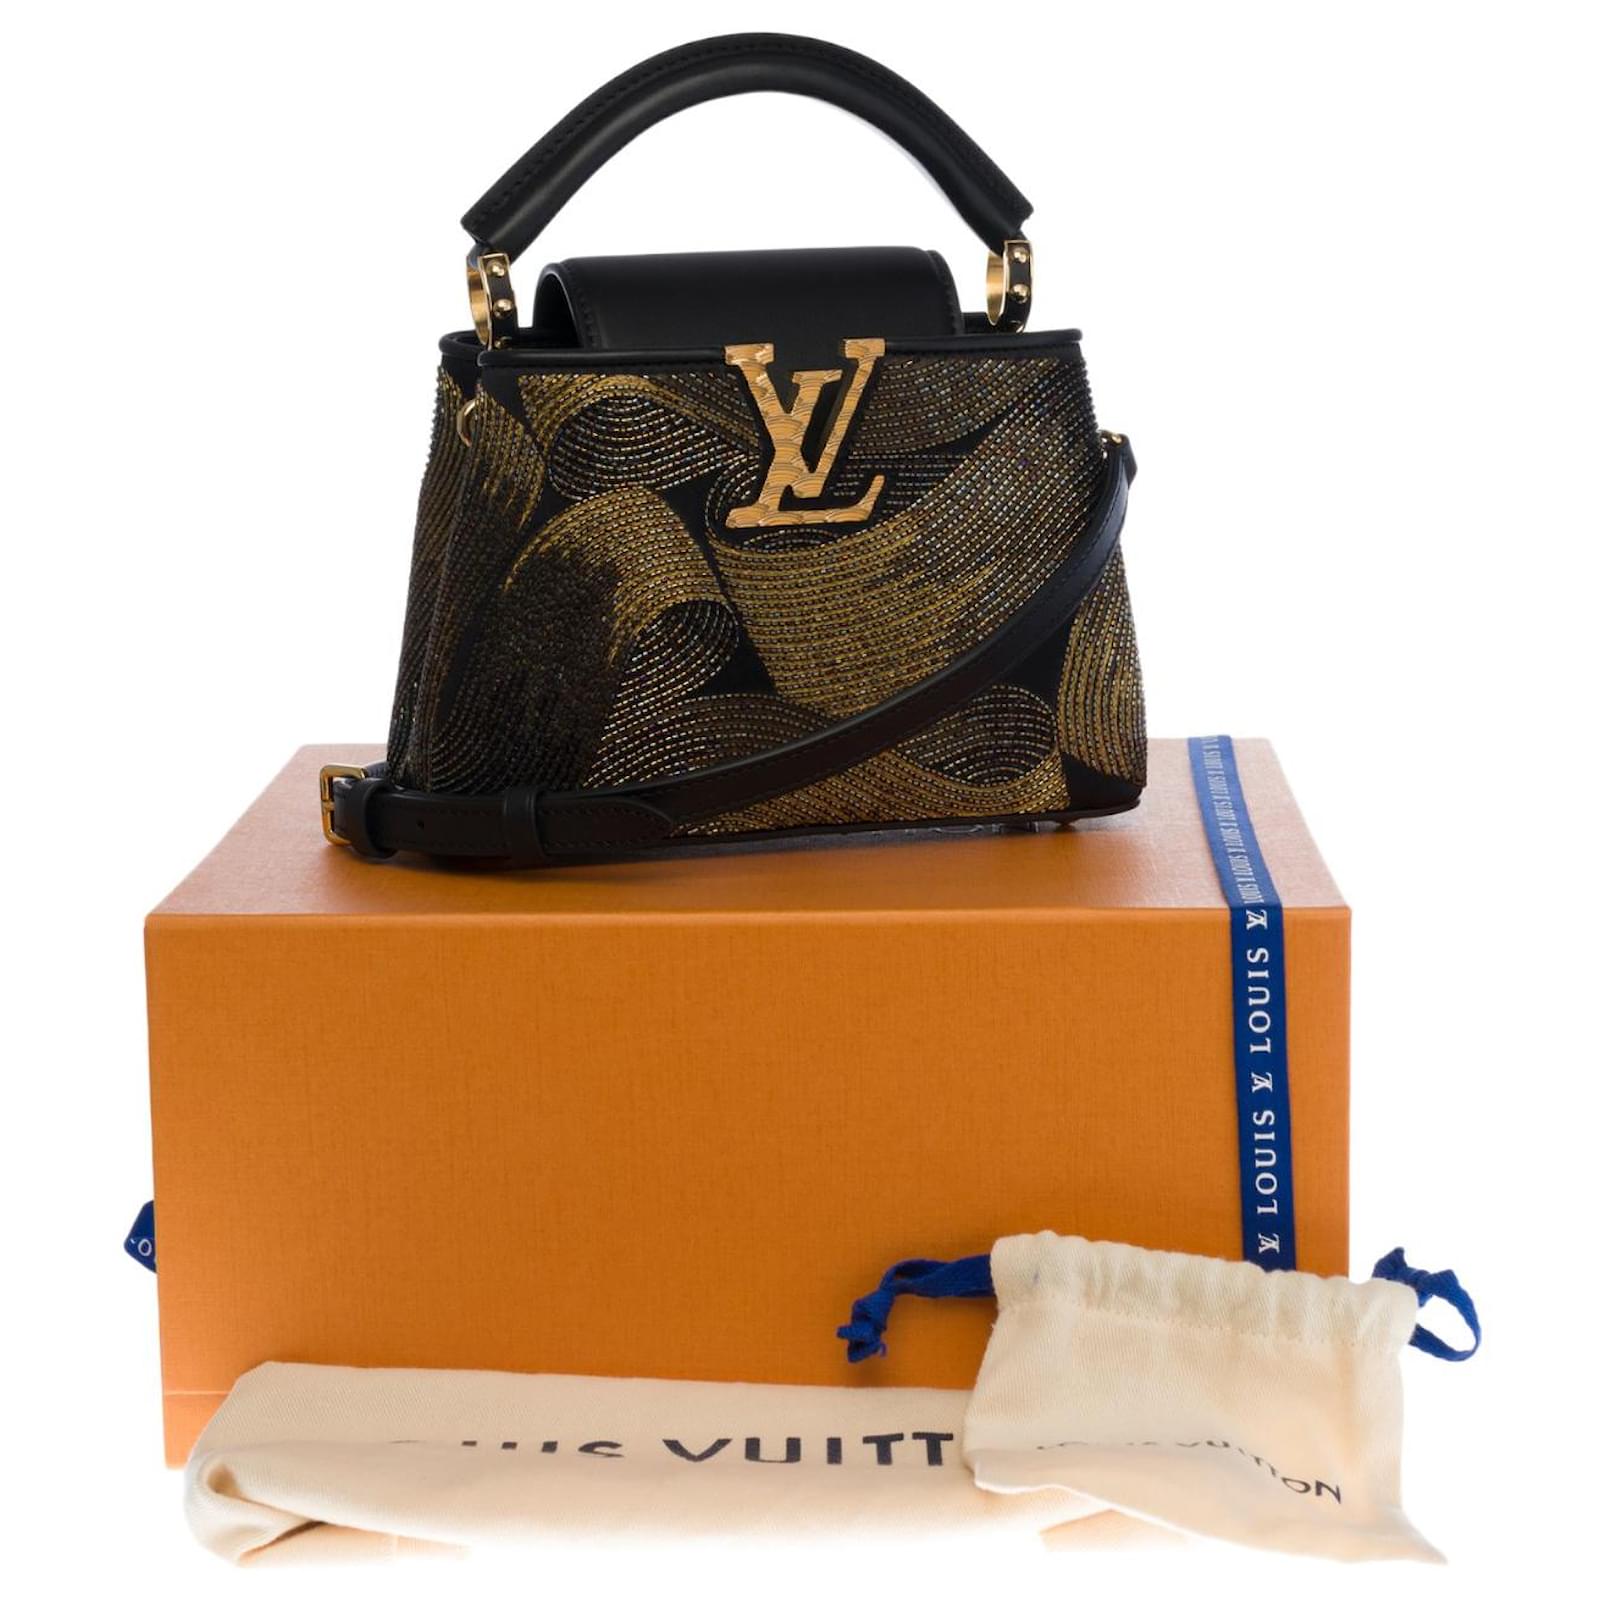 👜 My Mini LV Bag: A Joyful Purchase 🛍️, Galeri disiarkan oleh Chloe🦄